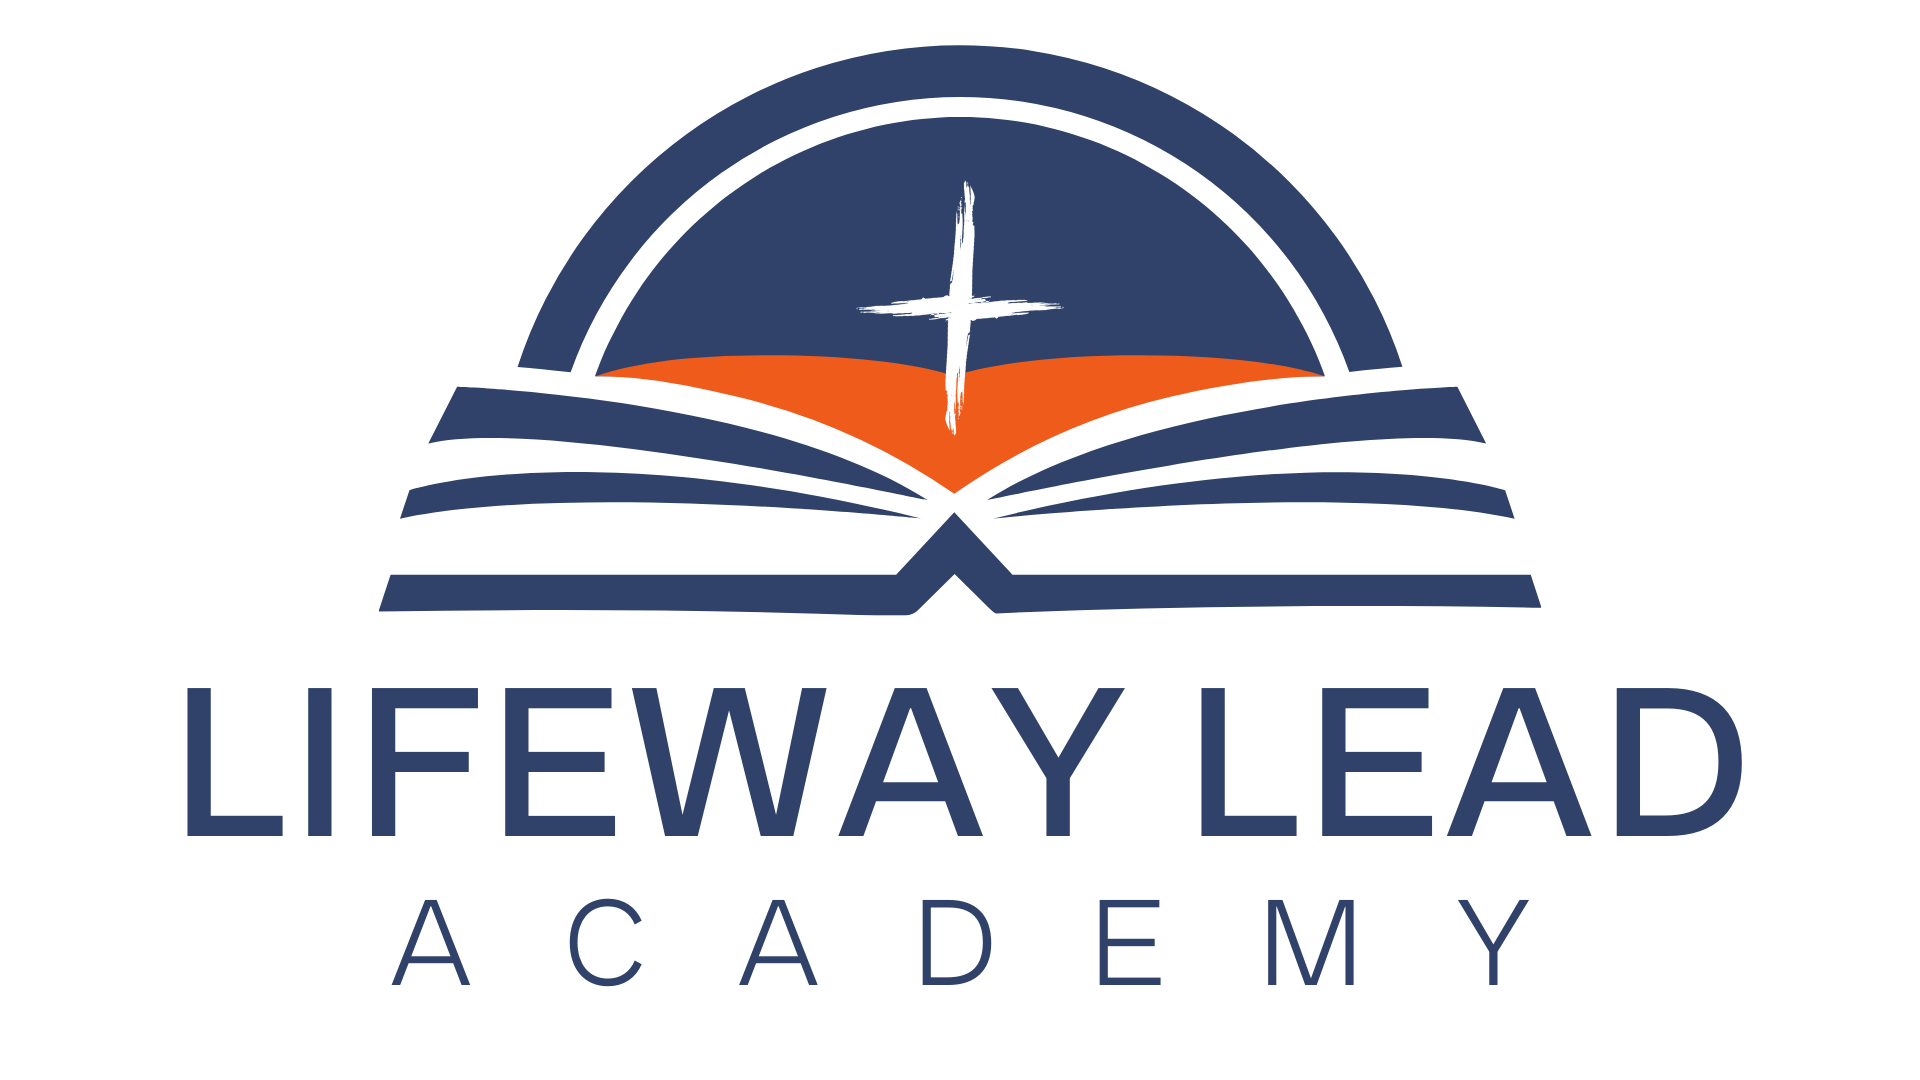 Lifeway Lead Academy The Lifeway Church